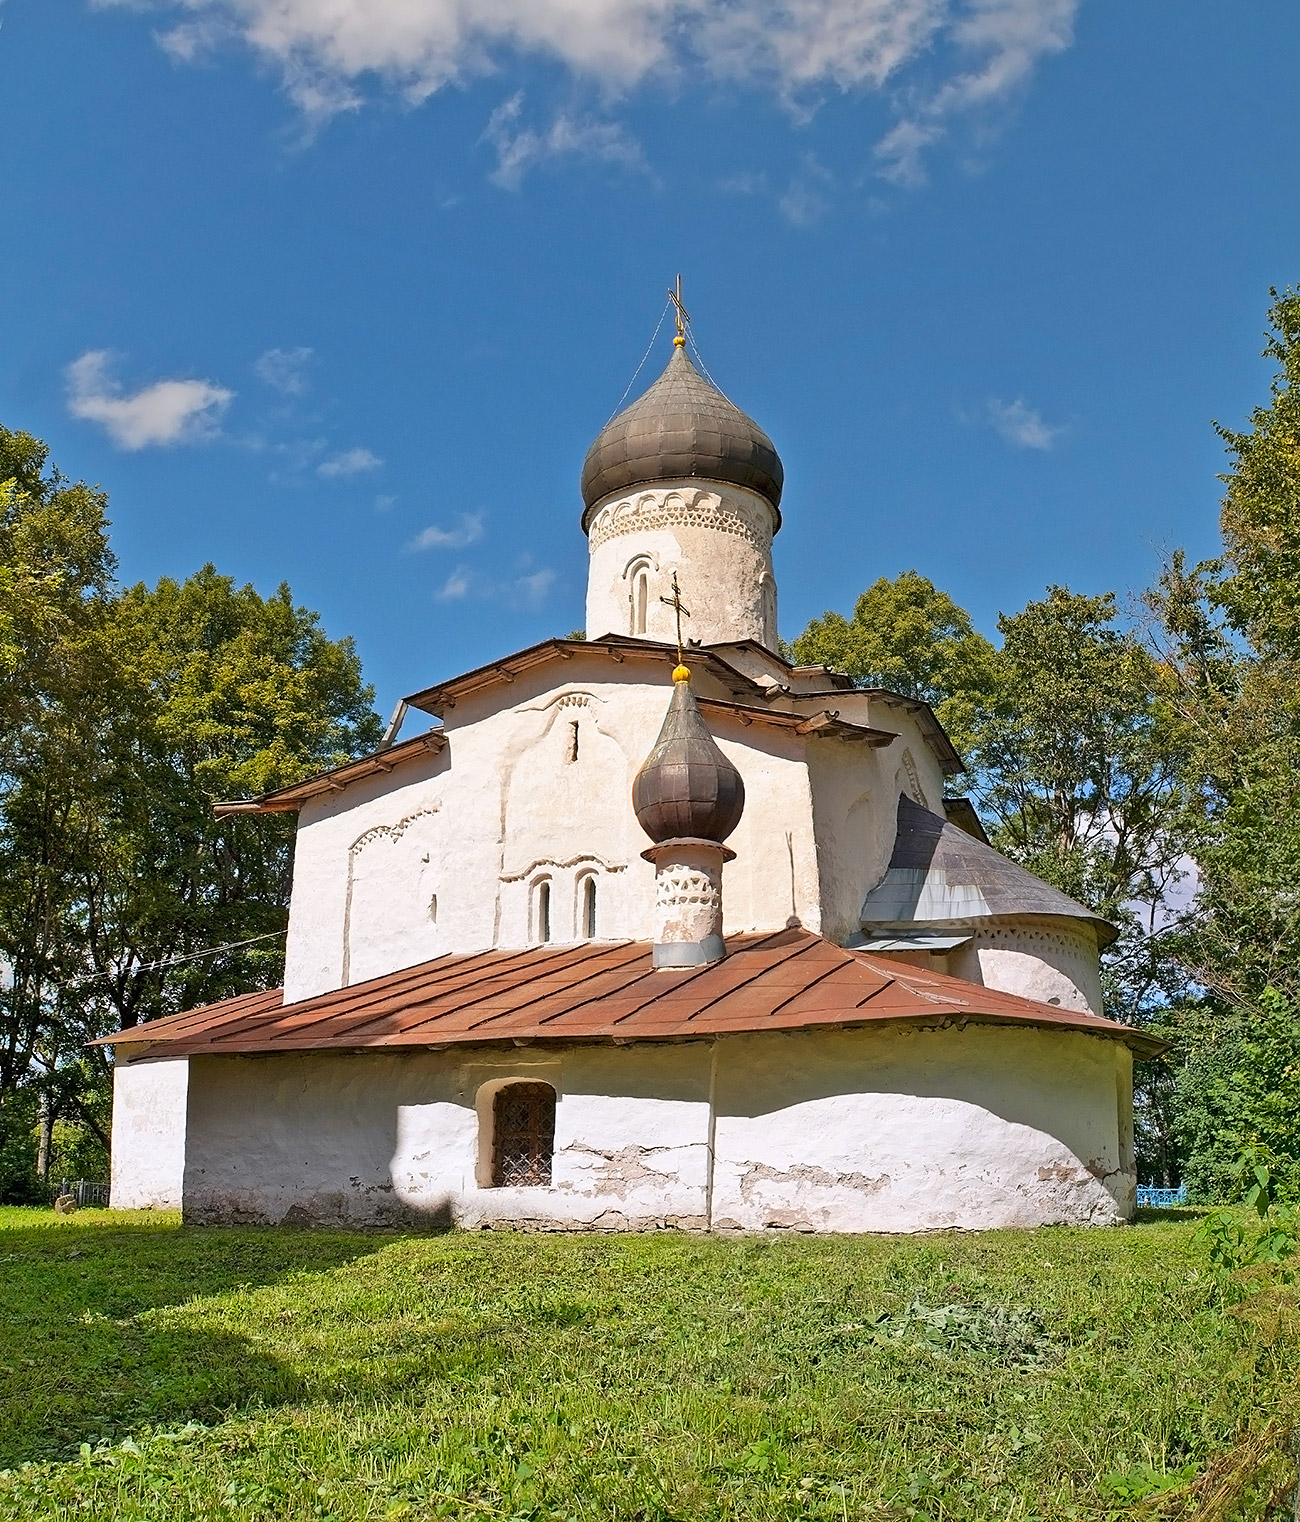 Quest’anno il Grabar Center è impegnato nella raccolta fondi per il restauro di un’altra Chiesa attualmente in cattive condizioni: la Chiesa dell’Assunzione della Vergine nel villaggio di Meletovo, vicino a Pskov